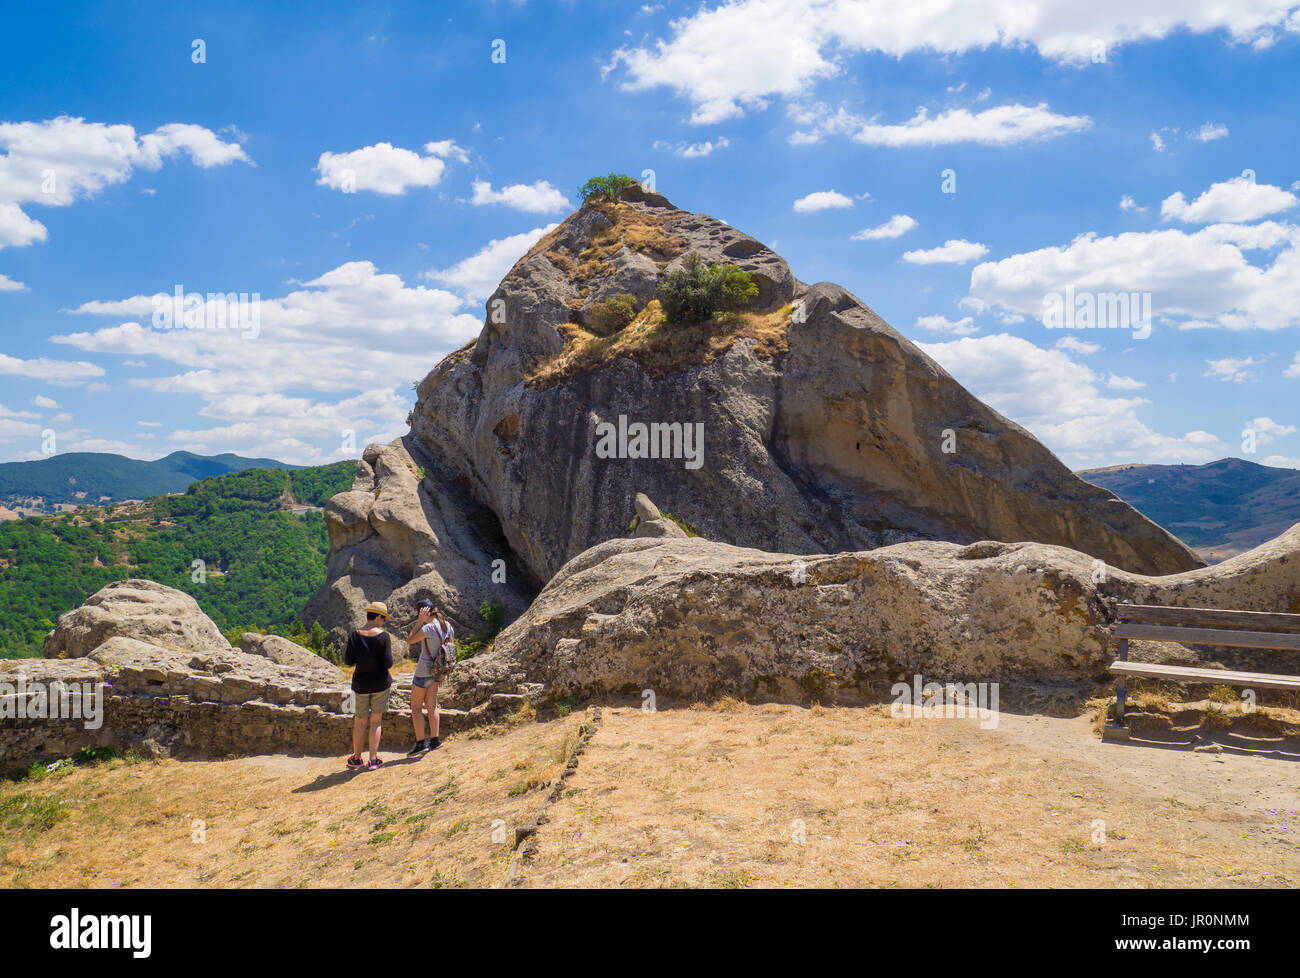 Castelmezzano (Italia) - un piccolo villaggio di altitudine, scavato nella roccia nel parco naturale delle Dolomiti Lucane, Basilicata, famoso per 'Angel' DI VOLO Foto Stock